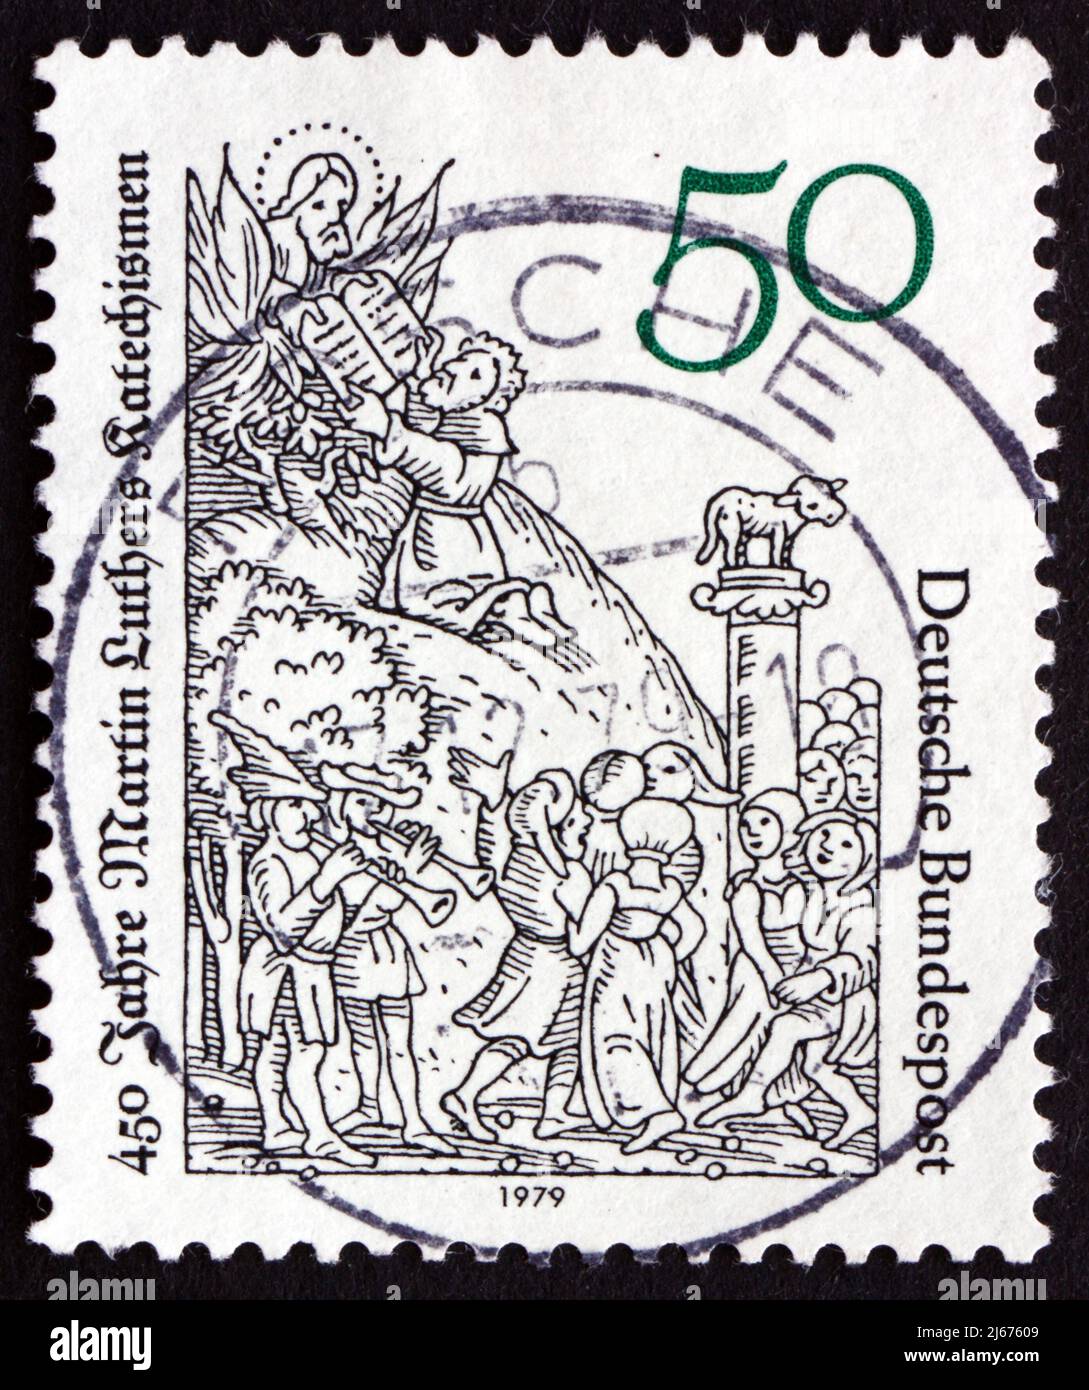 ALLEMAGNE - VERS 1979: Un timbre imprimé en Allemagne montre Moïse recevant des comprimés de la loi, illustration par Lucas Cranach, vers 1979 Banque D'Images